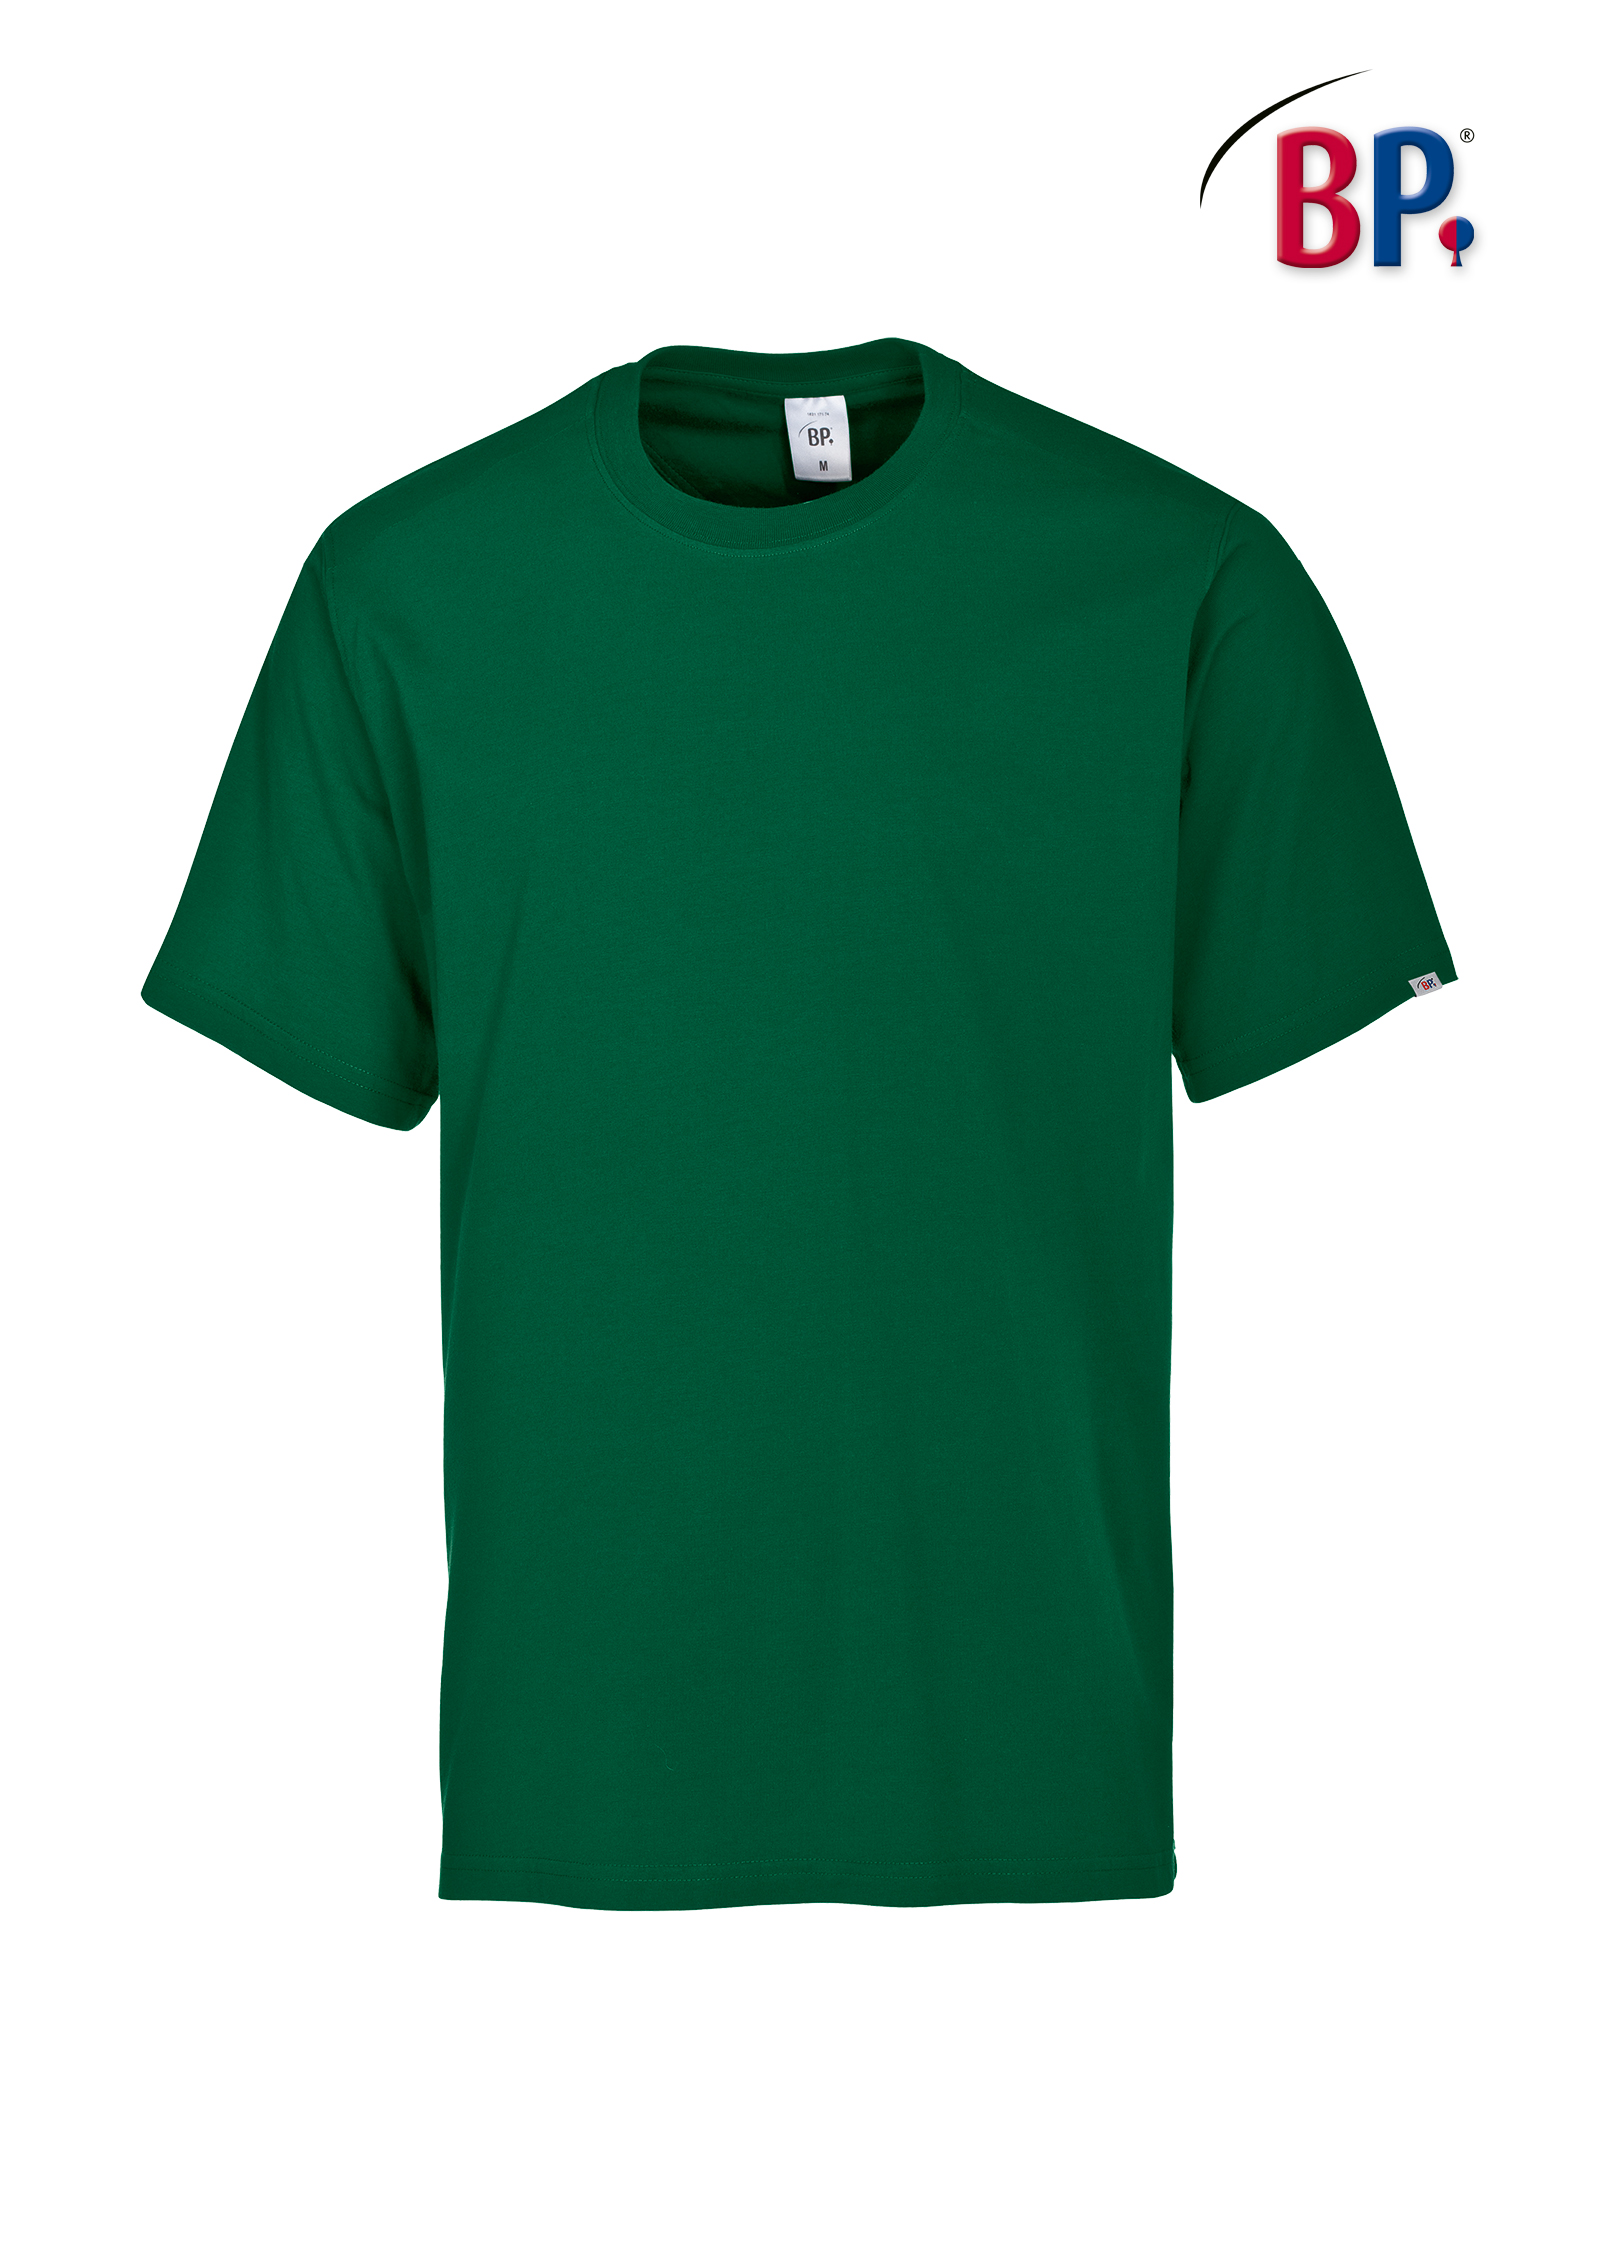 BP® T-Shirt für Sie & Ihn - 1621